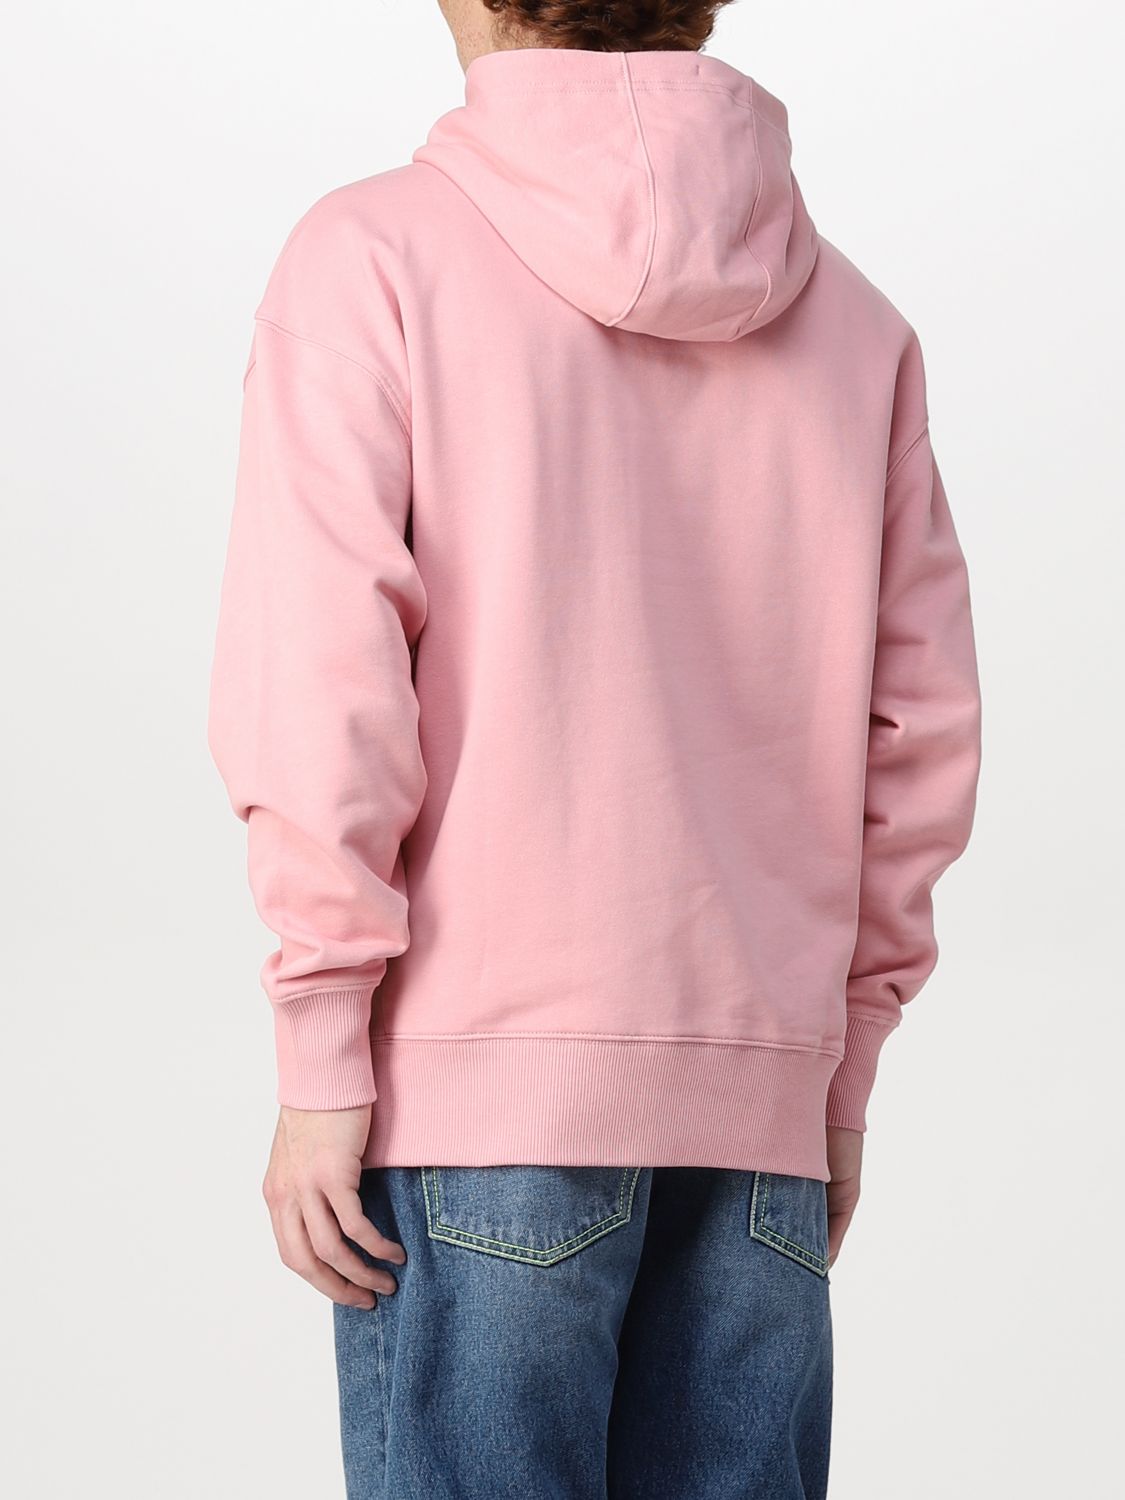 Sweatshirt Tommy Hilfiger: Tommy Hilfiger Herren Sweatshirt pink 2